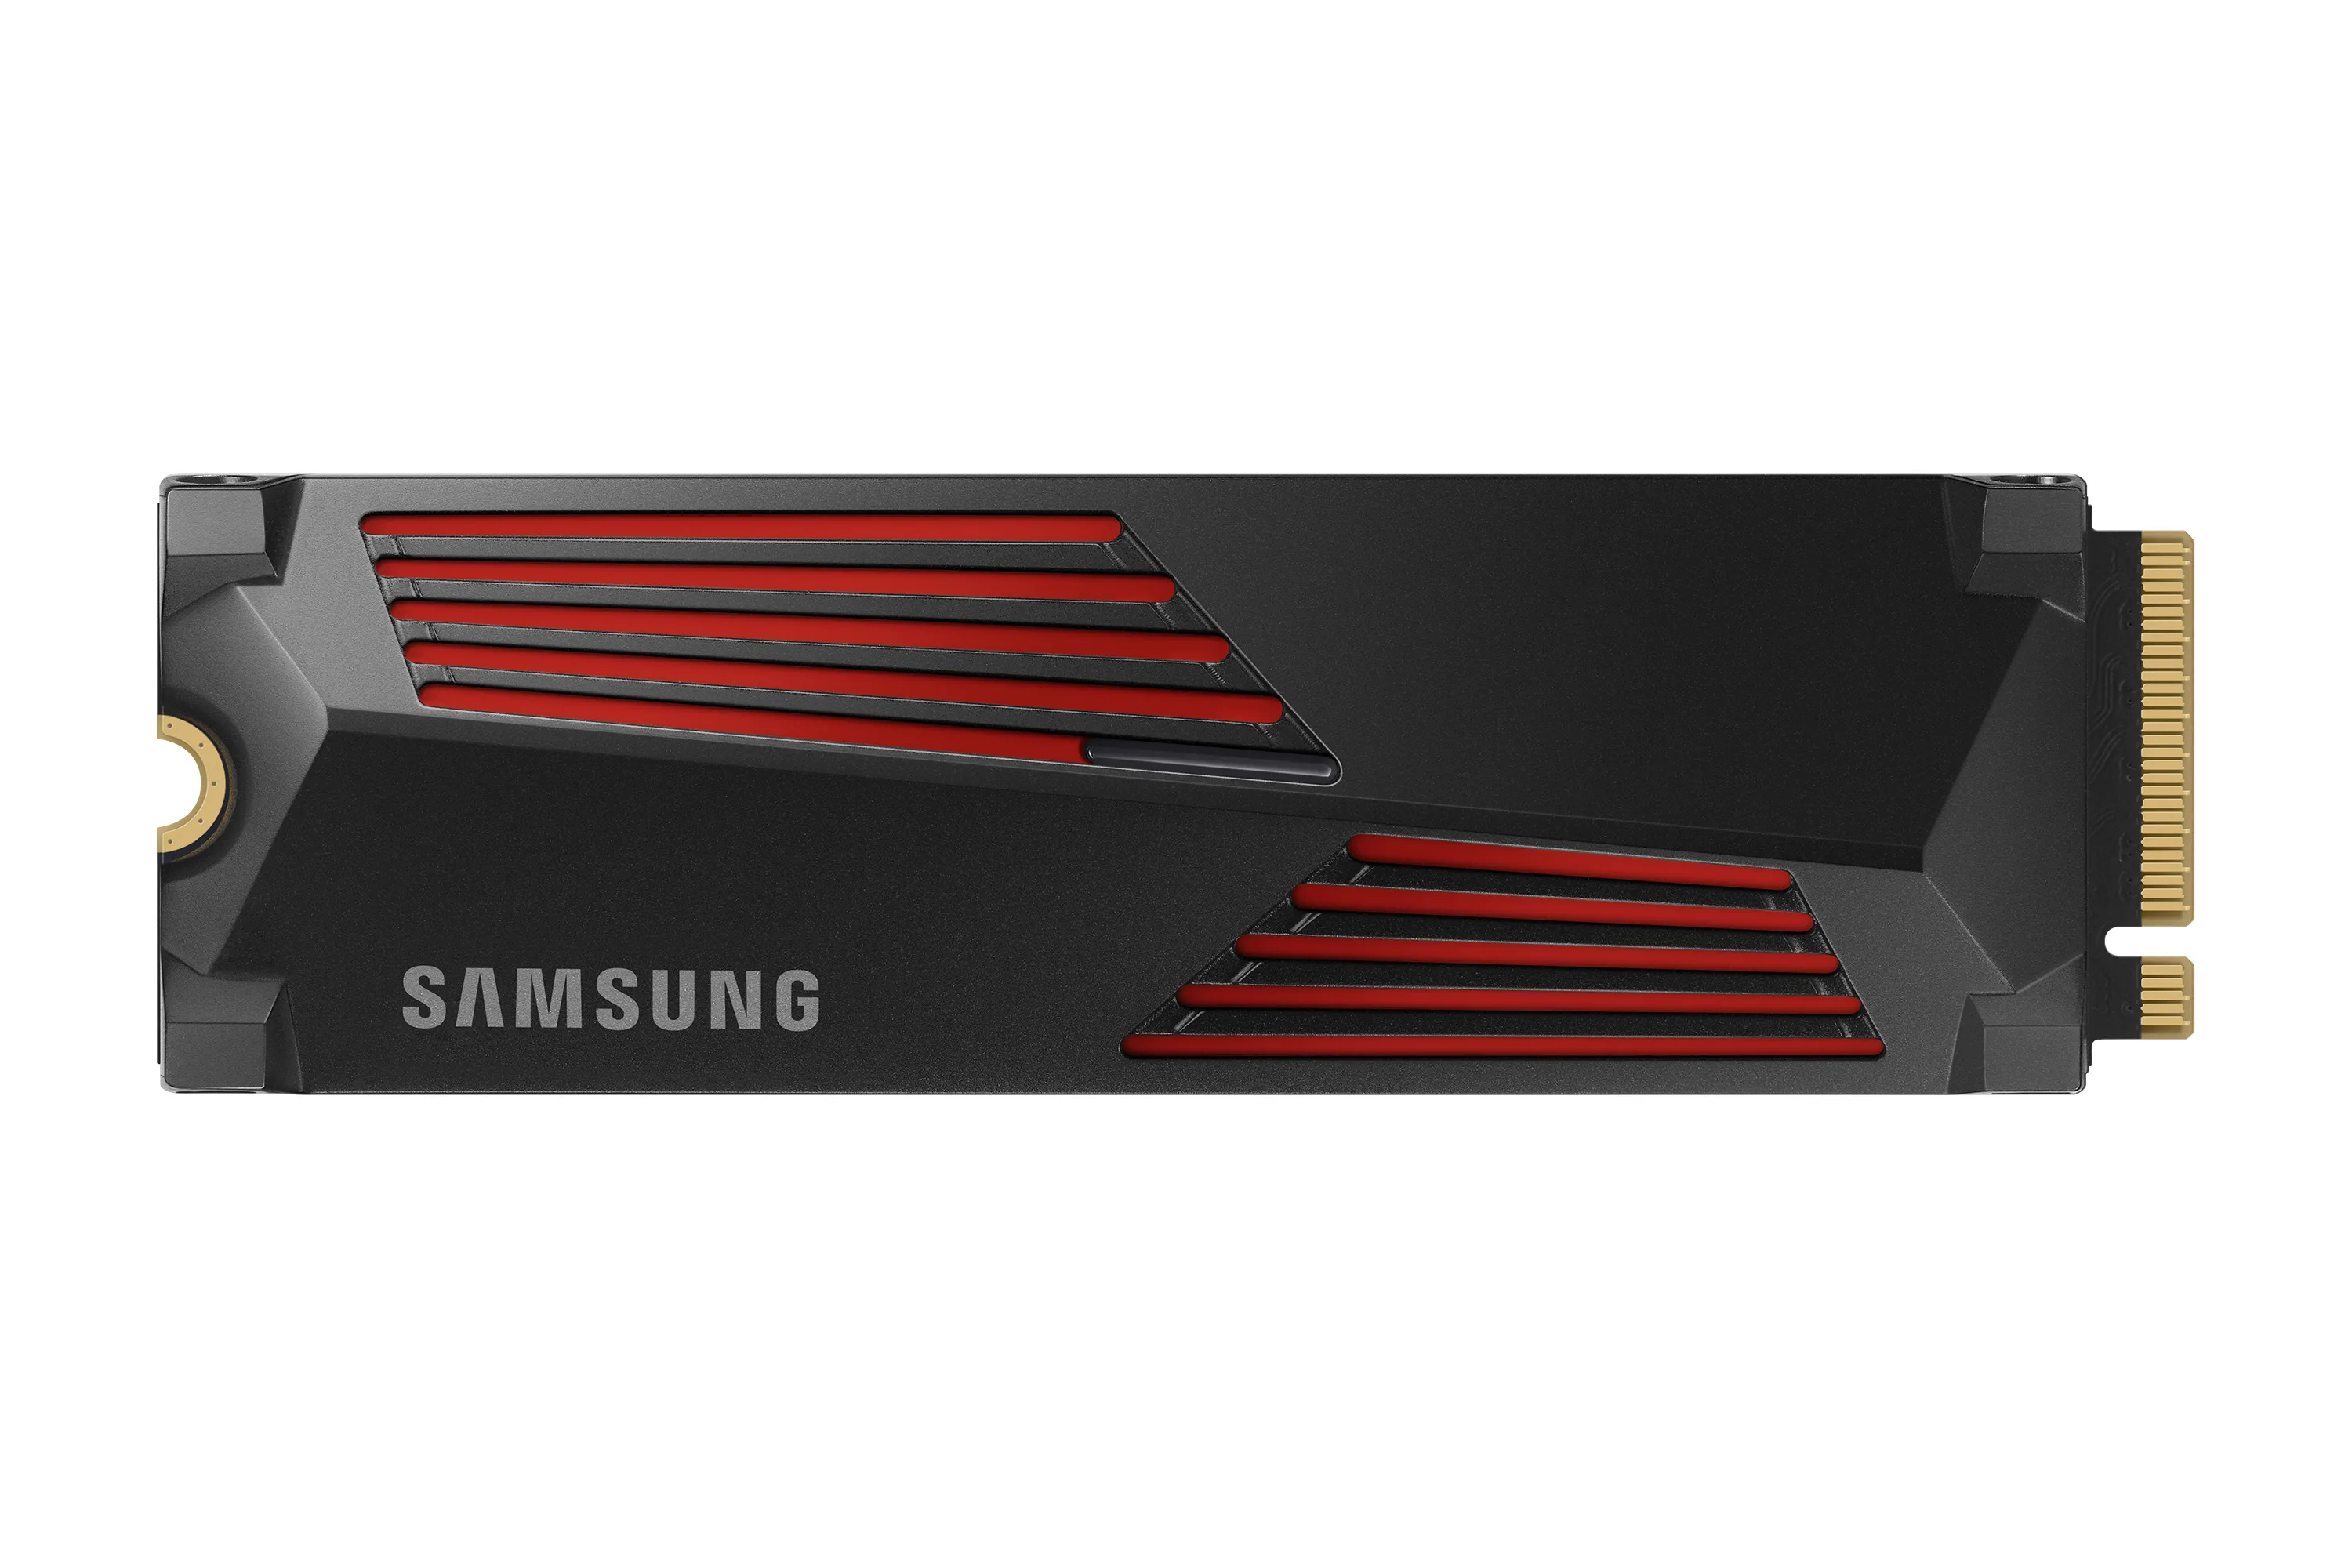 Vente SAMSUNG 990 Pro SSD 4To M.2 2280 PCIe 4.0 x4 NVMe 2.0 au meilleur prix